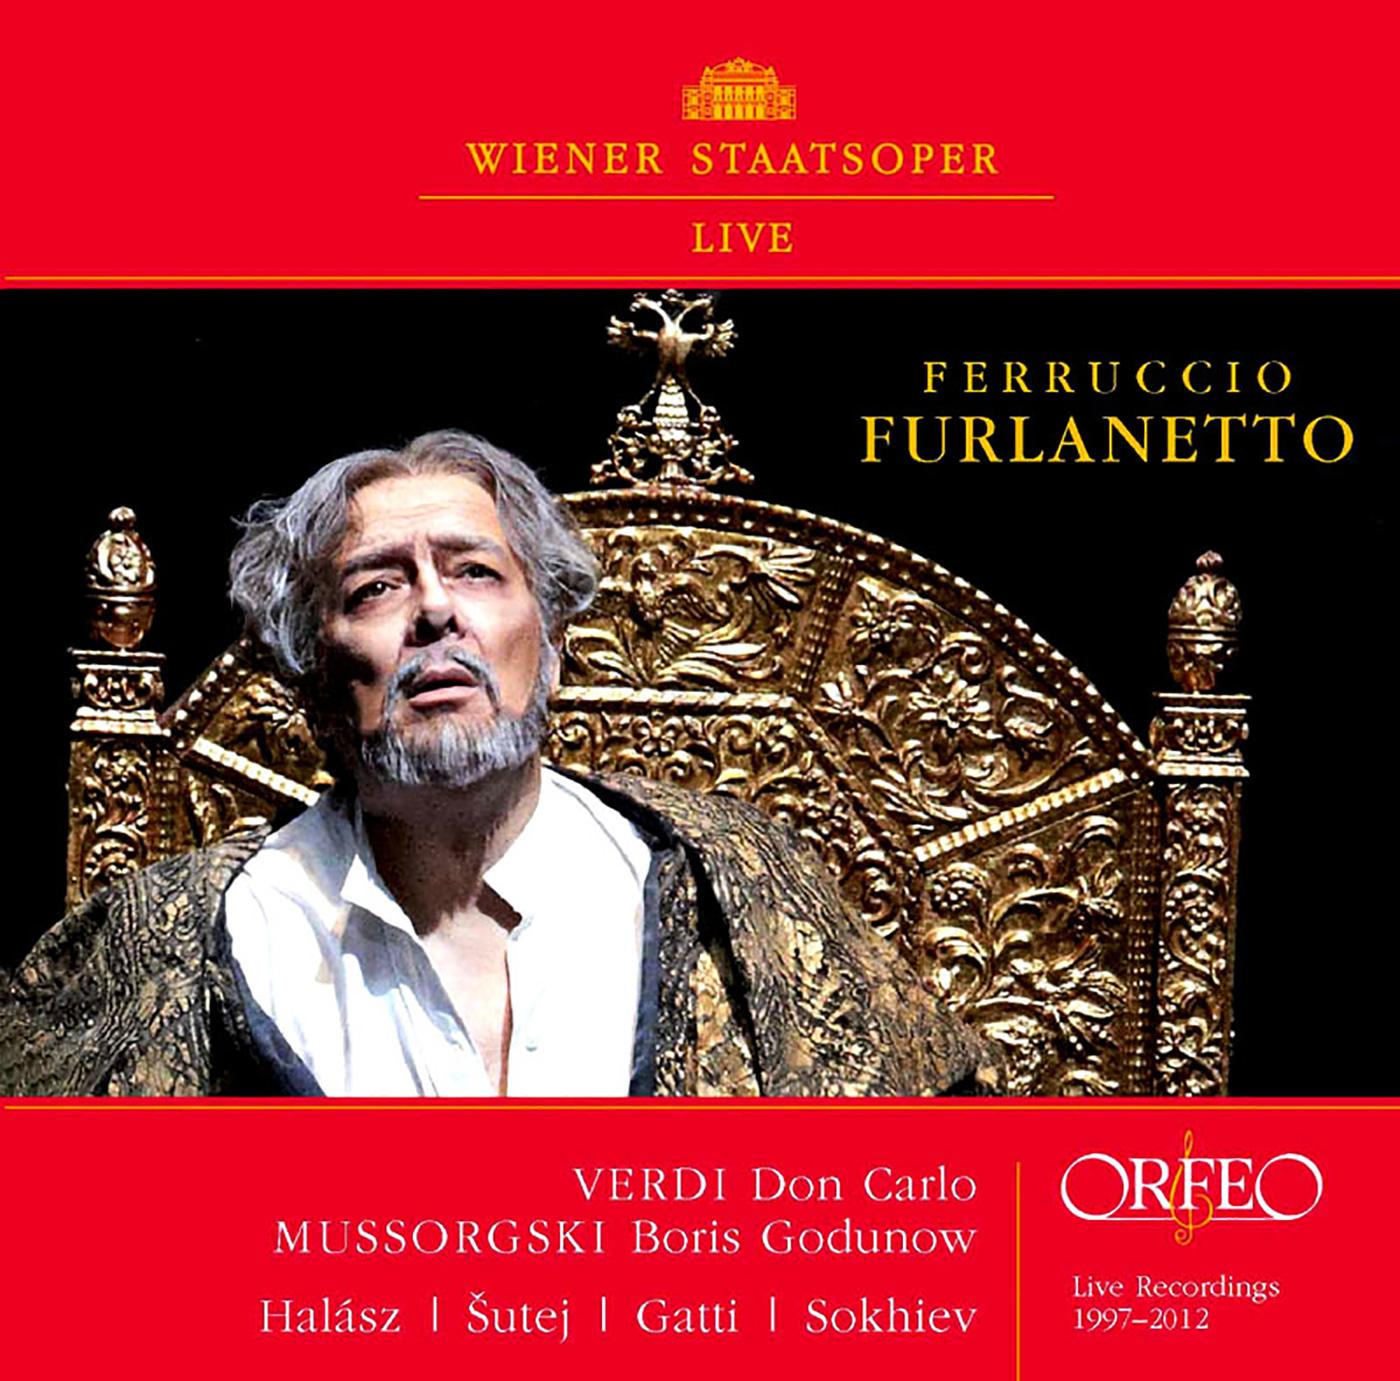 Ferruccio Furlanetto - Don Carlo*:Act III Scene 1: Ah, sii maledetto, sospetto fatale